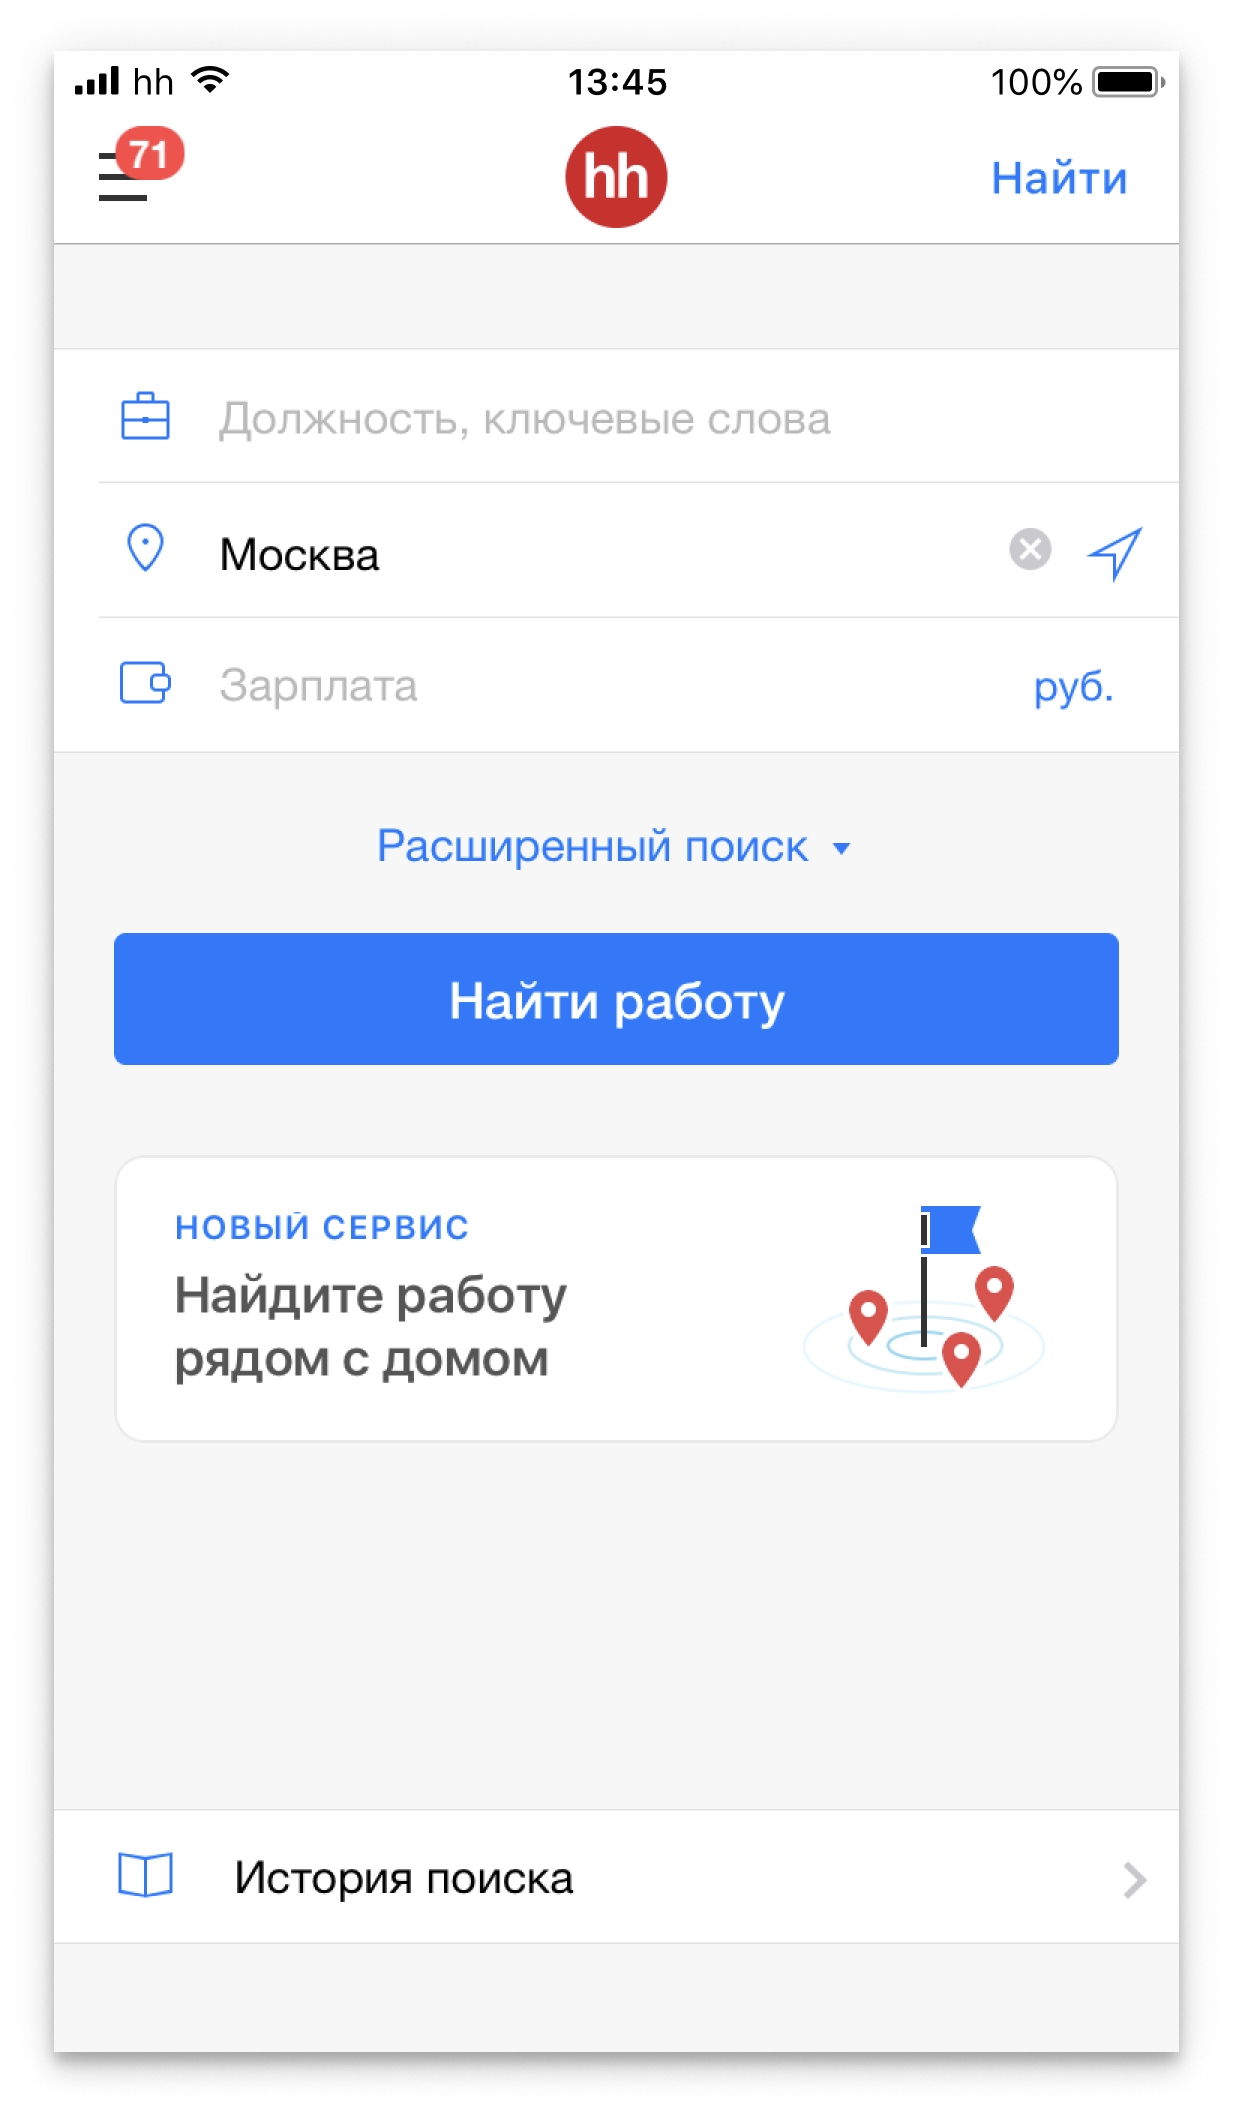 iOS-приложение hh.ru для поиска работы, 2018 год